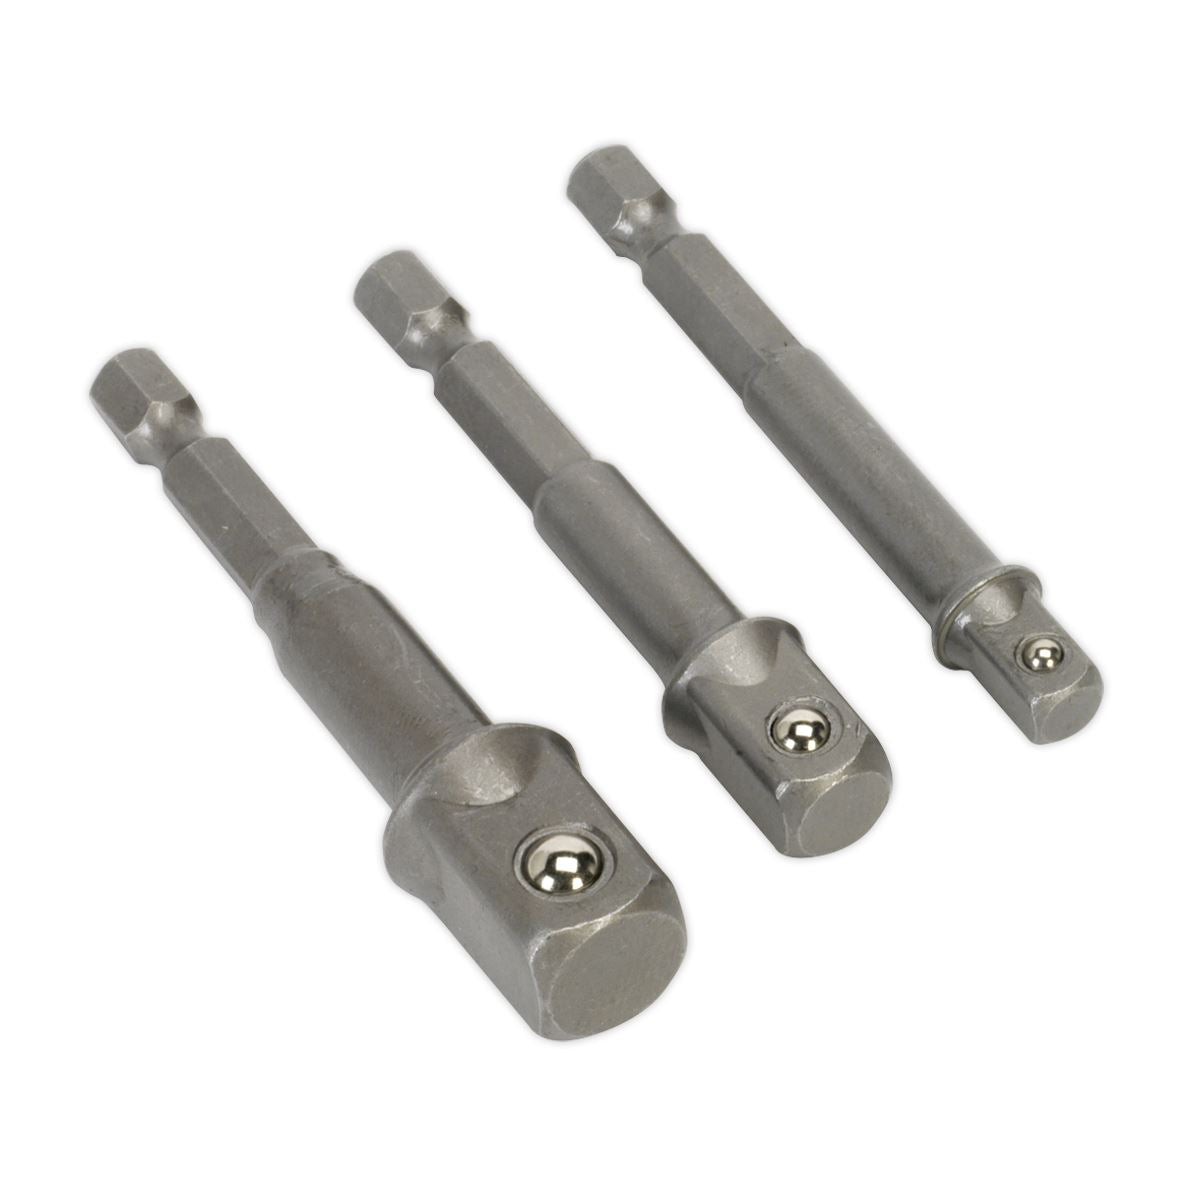 Sealey 3 Piece Power Tool Socket Adaptor Set 1/4" 3/8" 1/2" Drill Converter